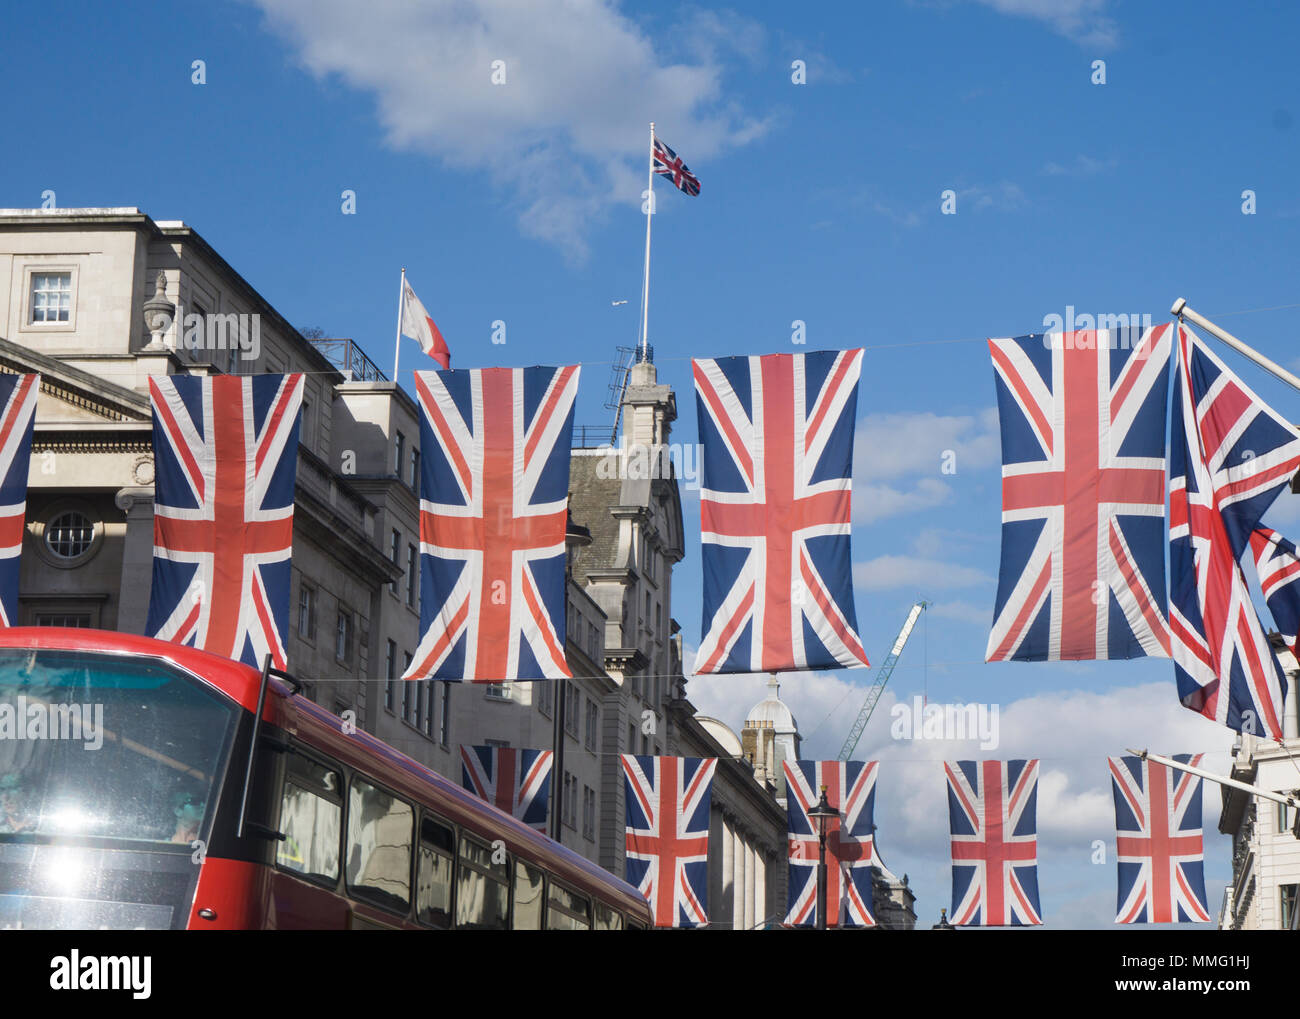 Union Jack drapeaux en préparation pour le mariage royal Banque D'Images